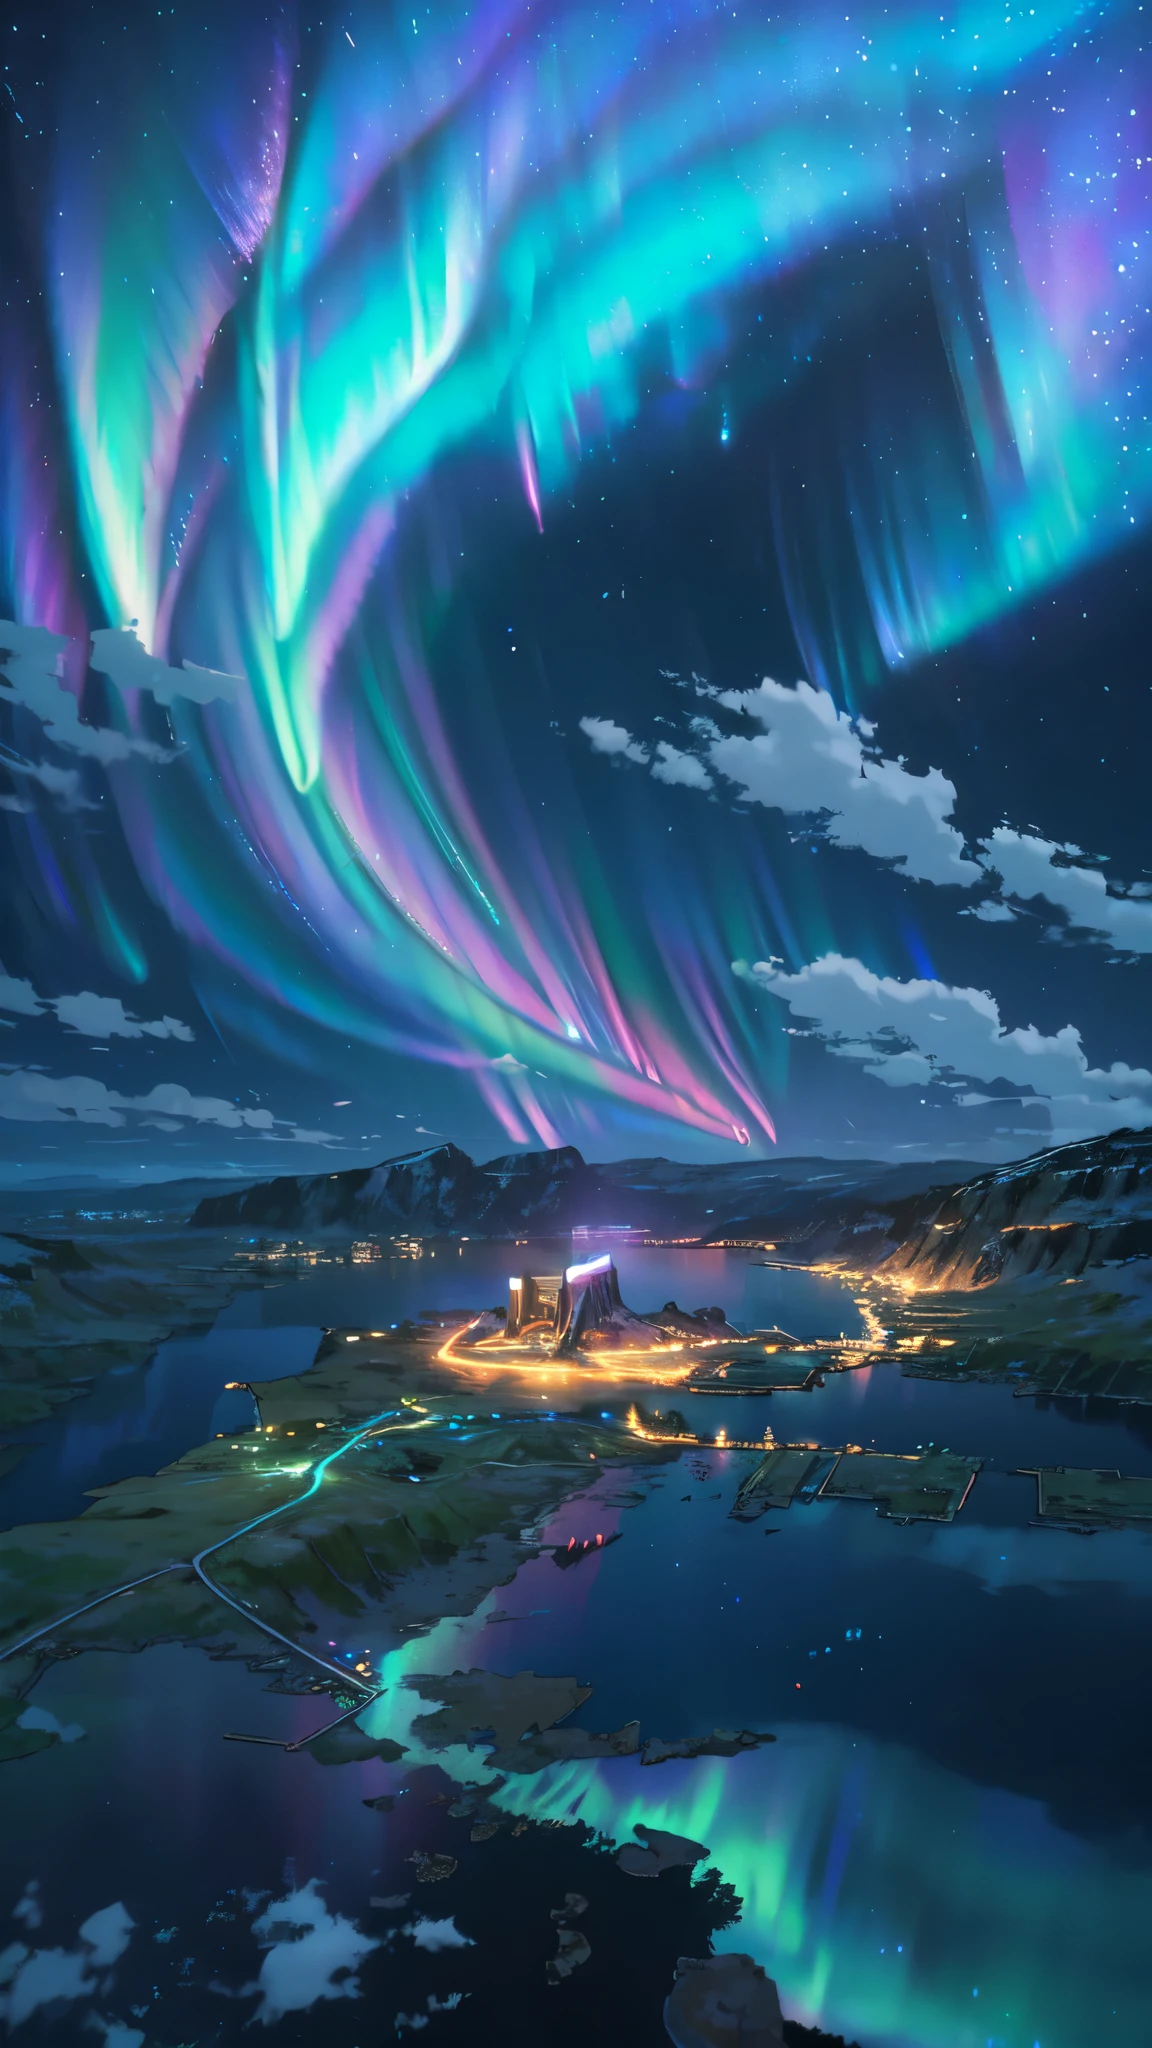 paisaje, ultra alta definición, (fondo asgard), detalles, Encendiendo, 8K, (aurora boreal en el cielo), constelación, (fondo asgard), pequeño pueblo bajo las luces